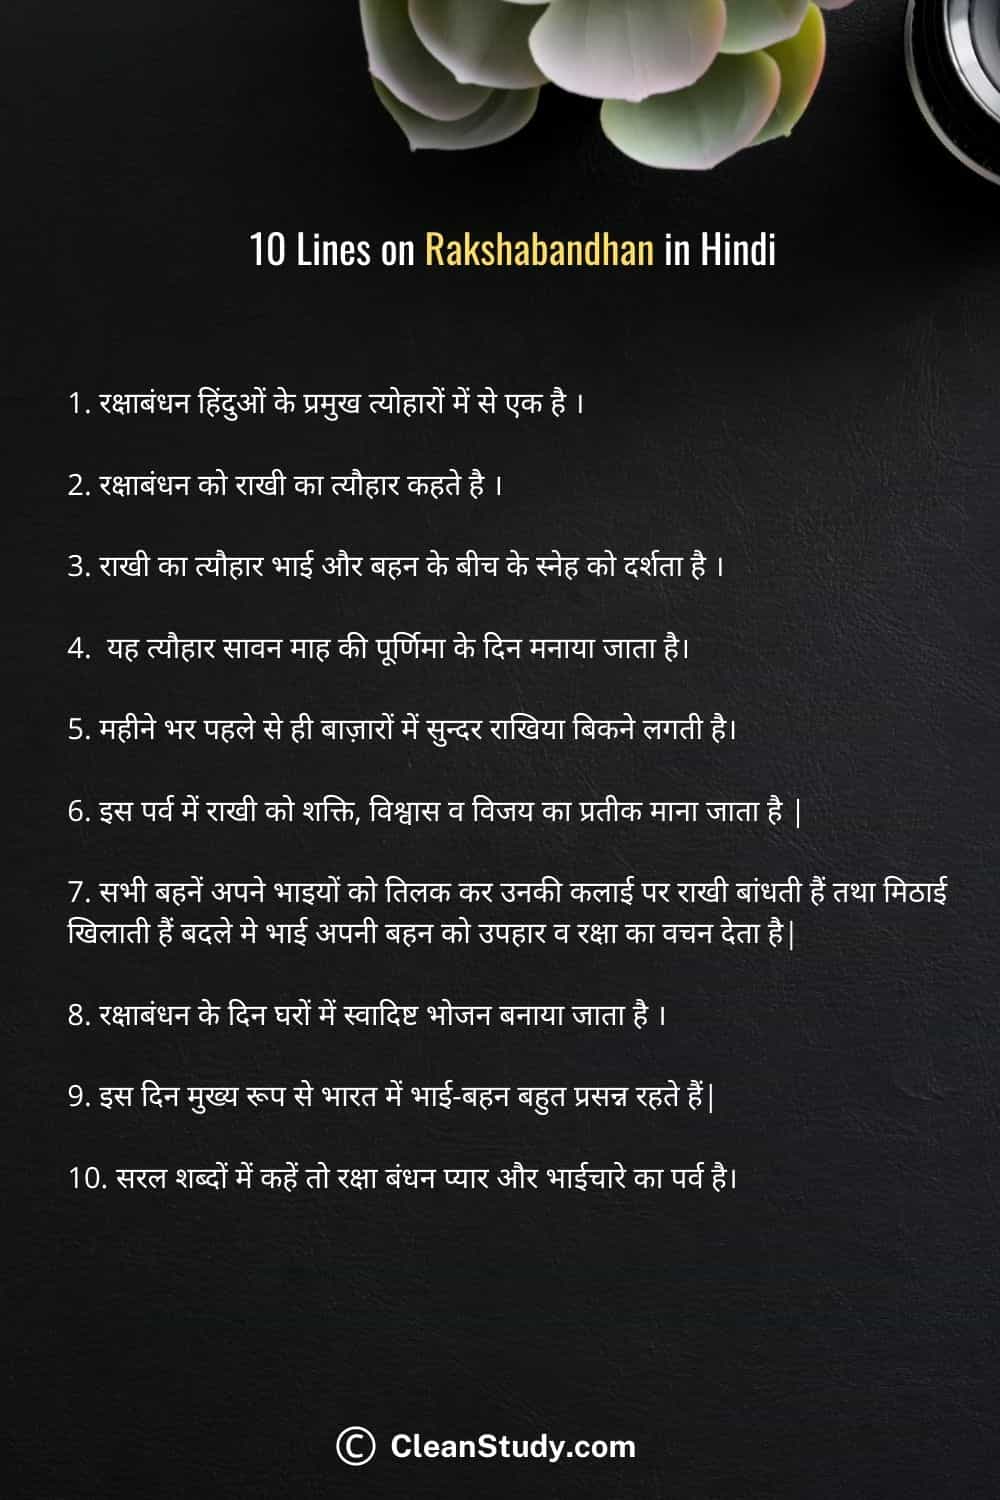 10 Lies on Rakshabandhan in Hindi